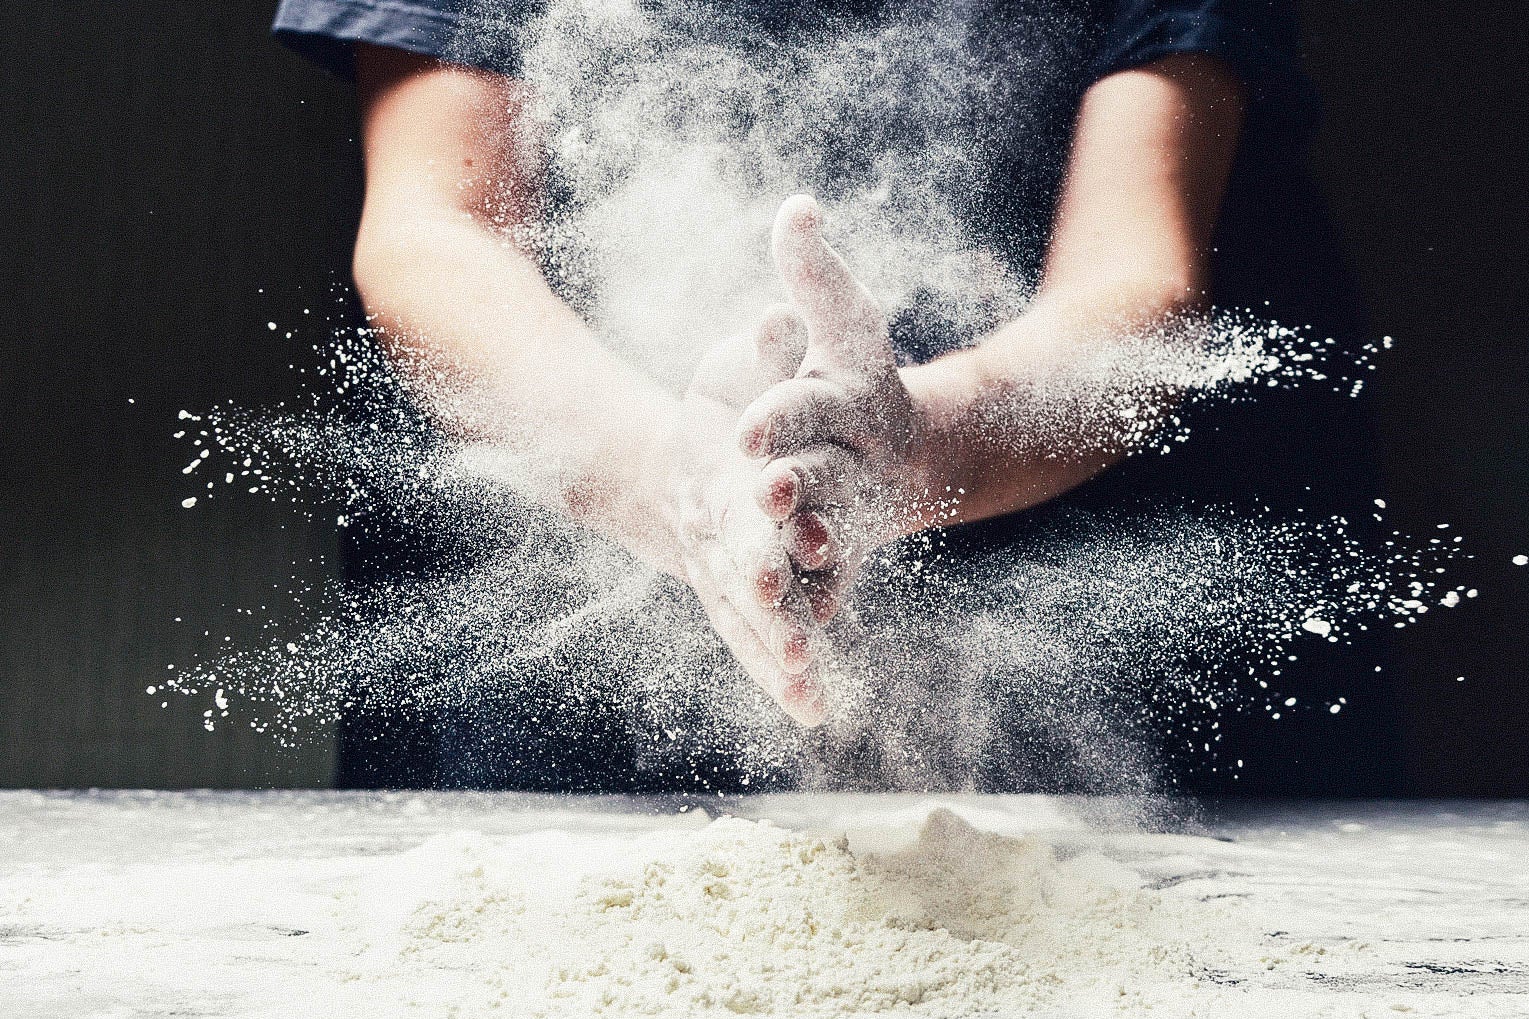 Man spreading flour while making dough.